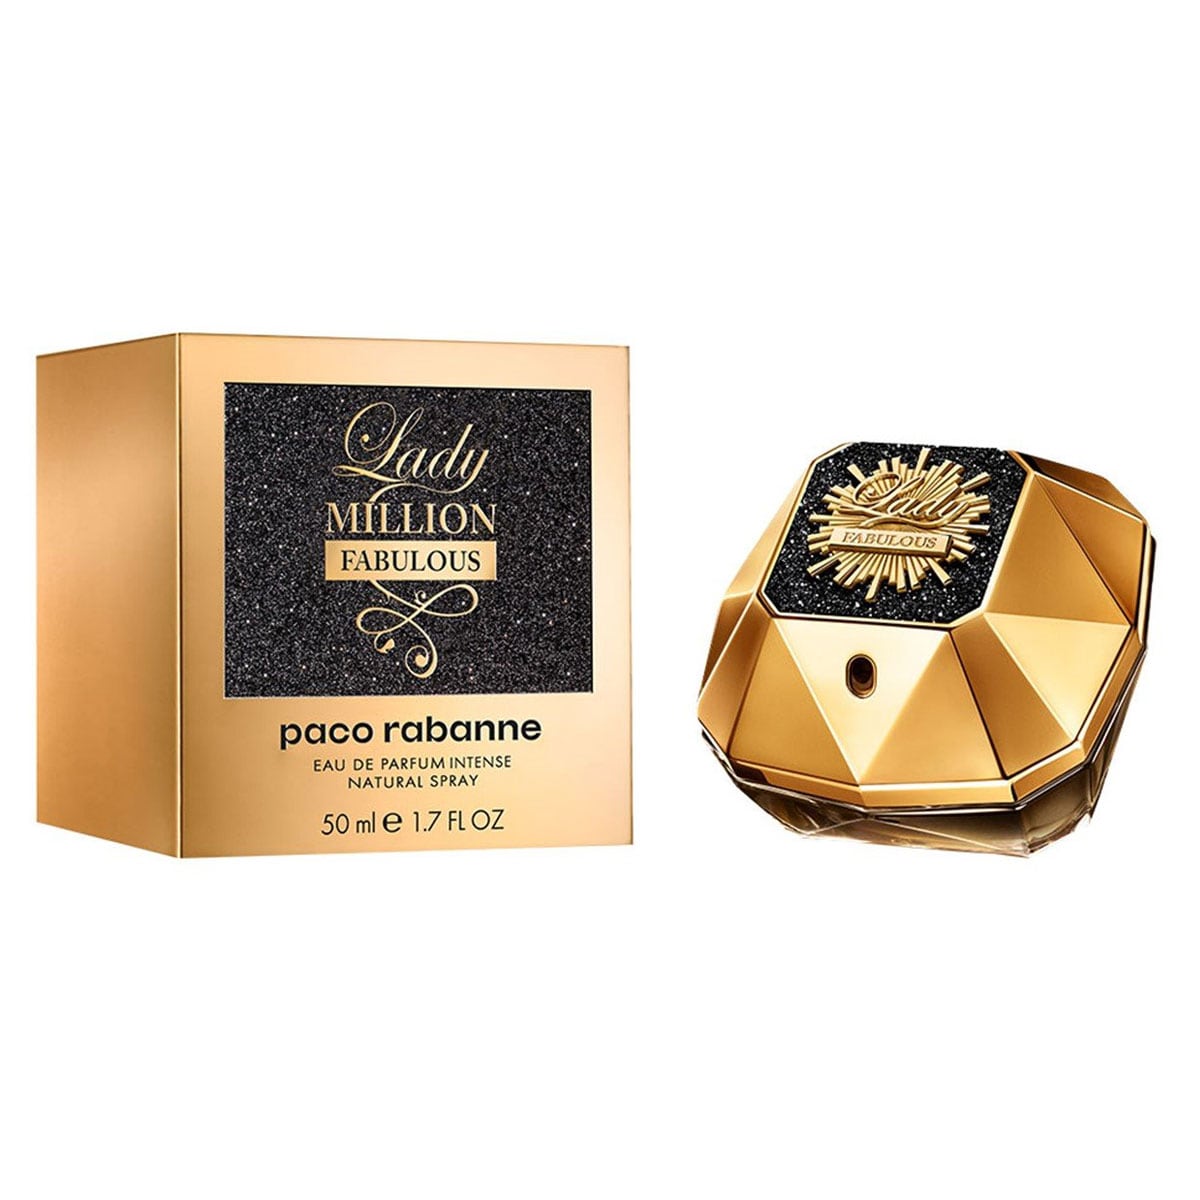 Paco Rabanne Lady Million Fabulous Eau de Parfum Intense for Women 50ml